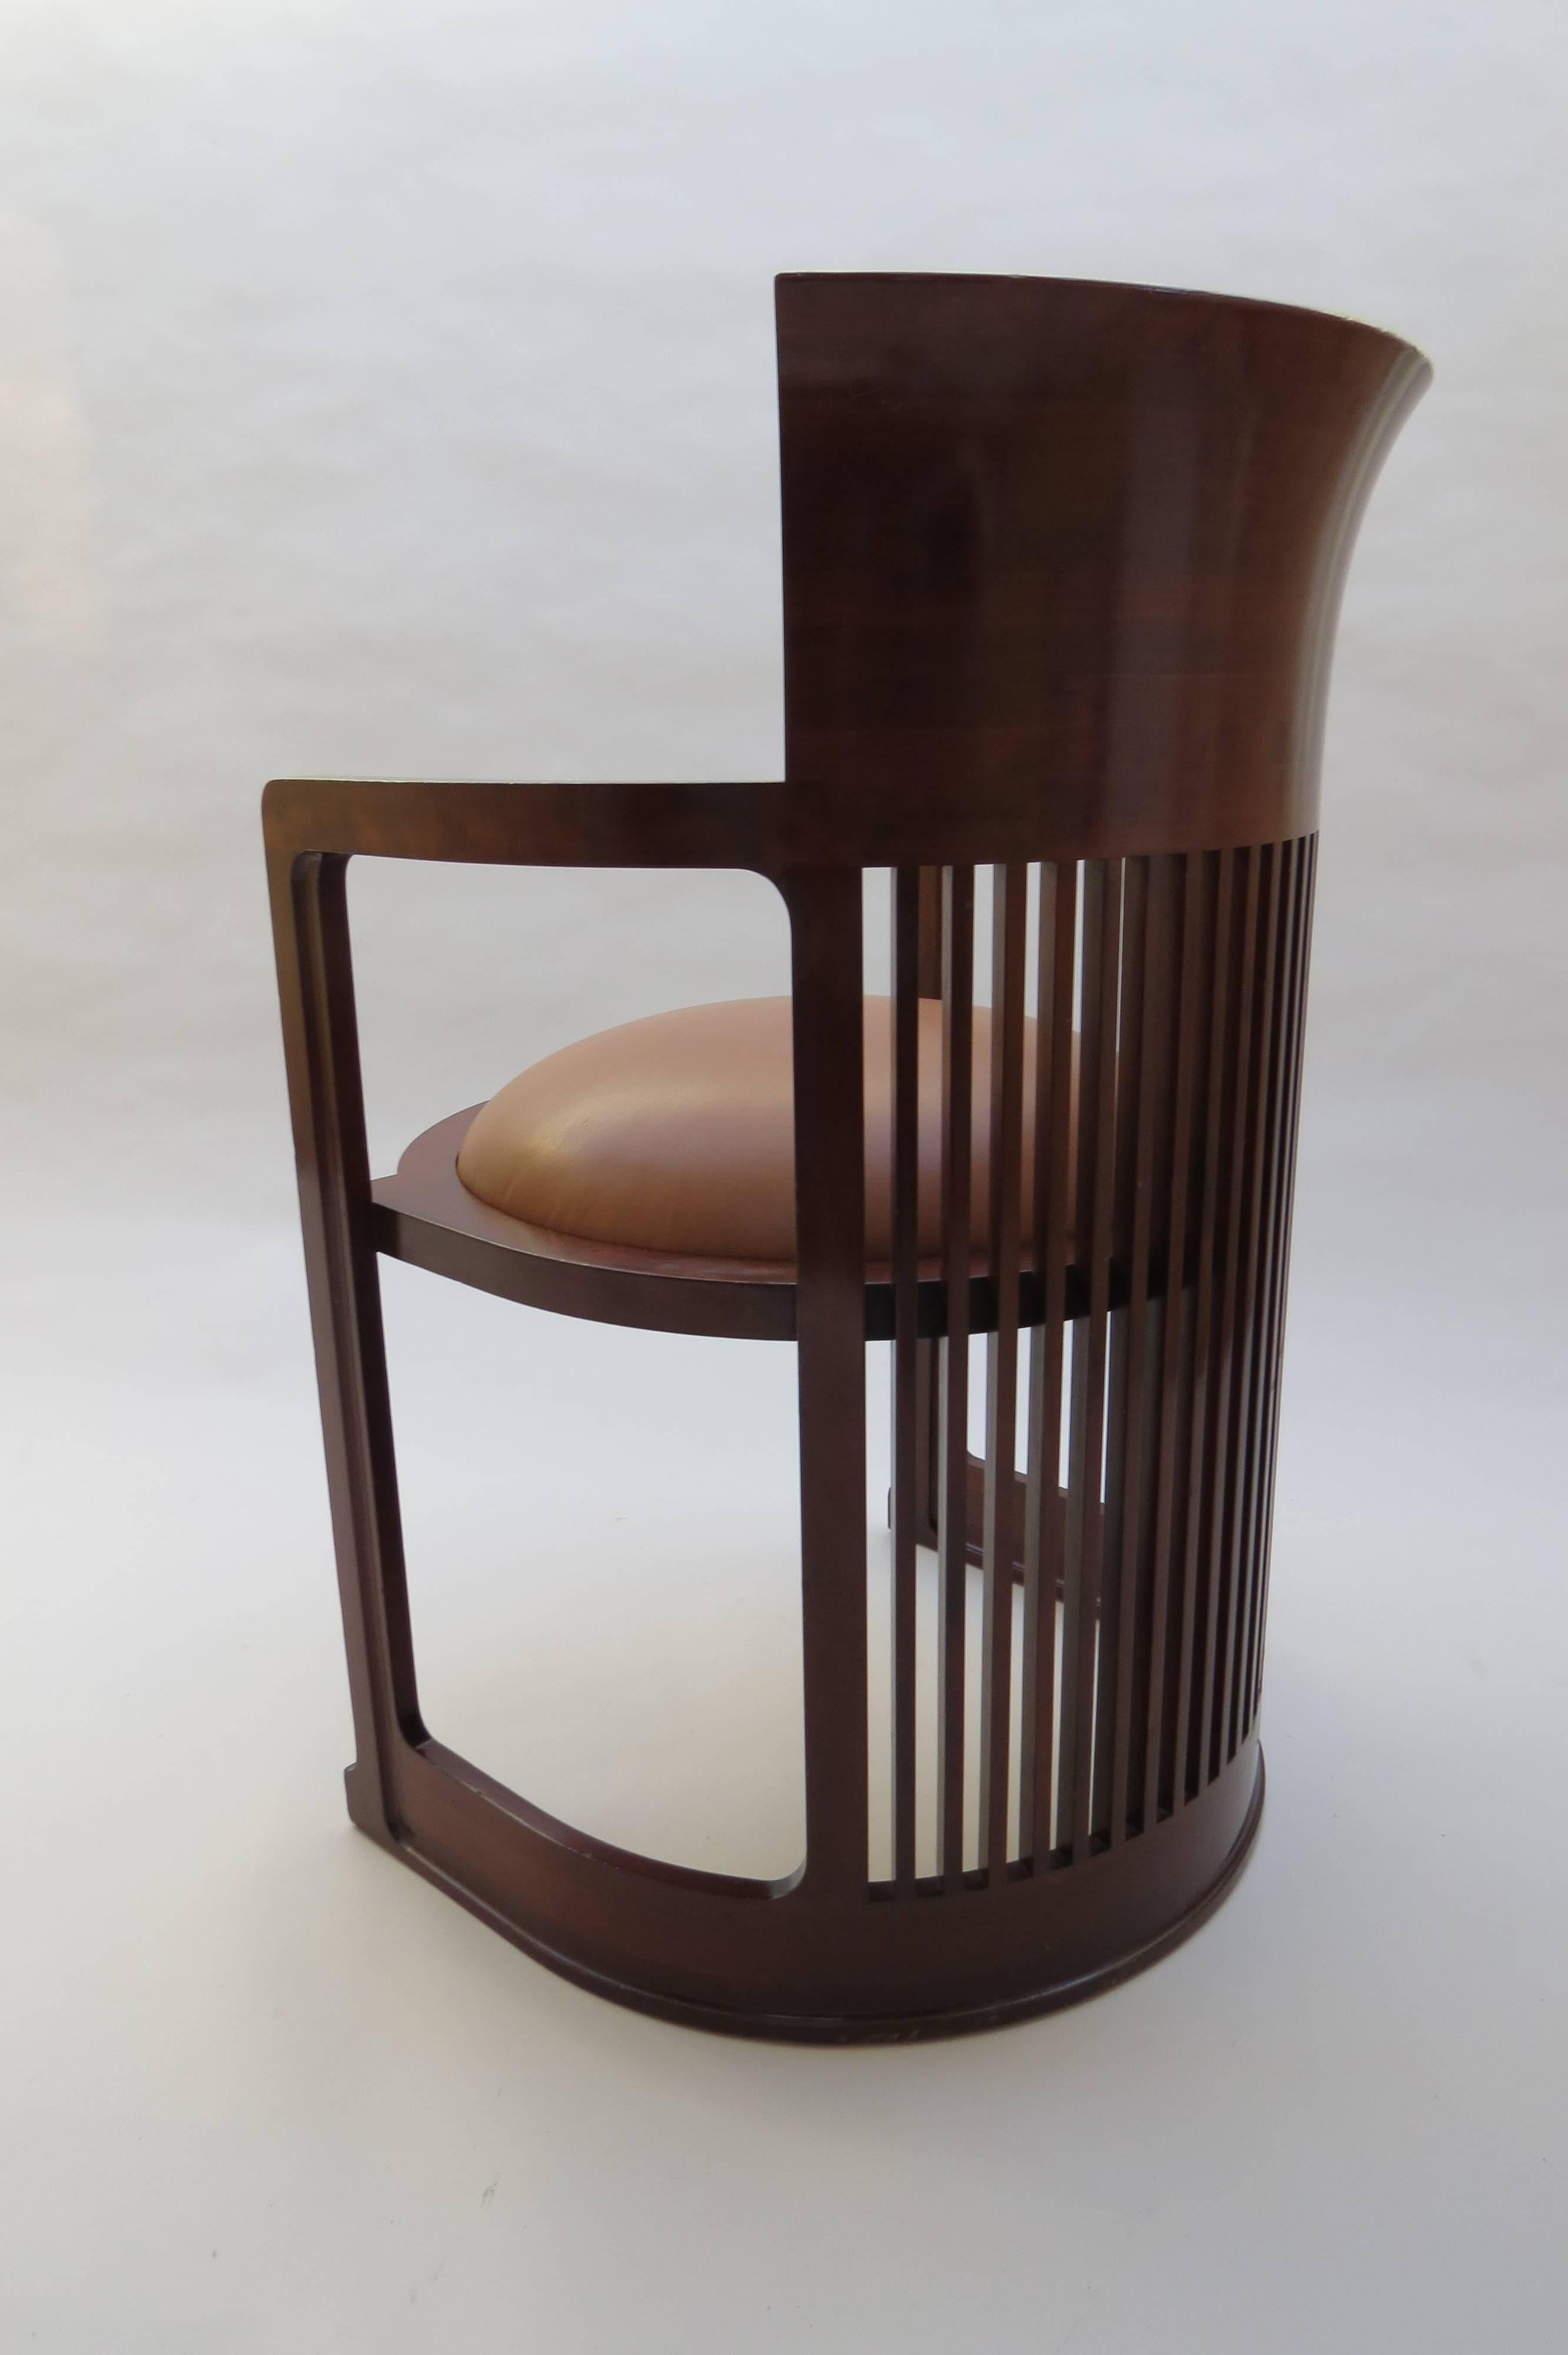 Barrel Taliesin Chair designed by Frank Lloyd Wright 1